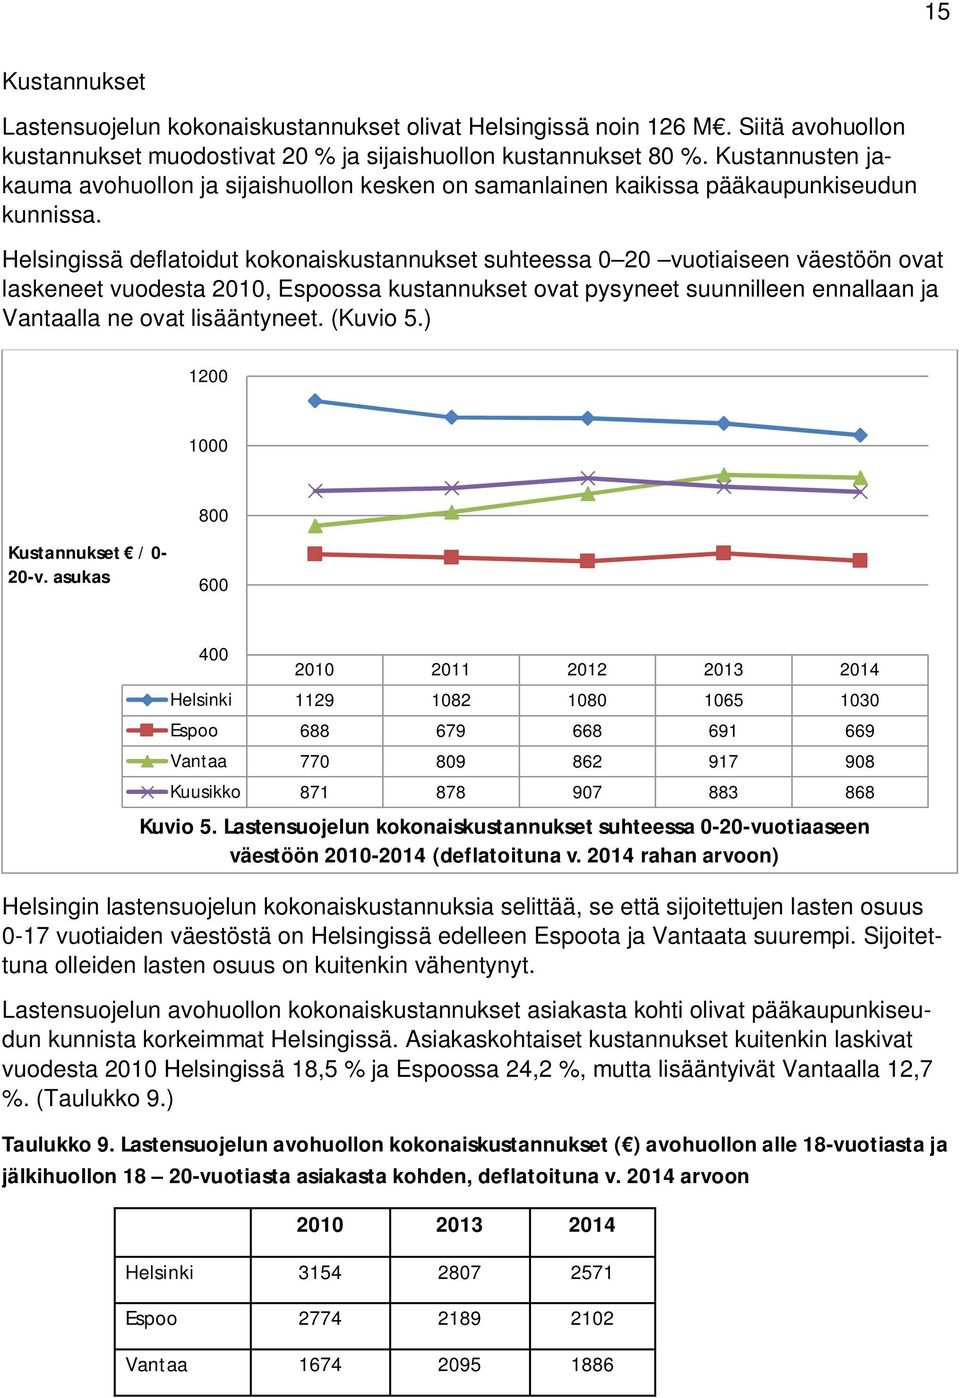 Helsingissä deflatoidut kokonaiskustannukset suhteessa 0 20 vuotiaiseen väestöön ovat laskeneet vuodesta 2010, Espoossa kustannukset ovat pysyneet suunnilleen ennallaan ja Vantaalla ne ovat